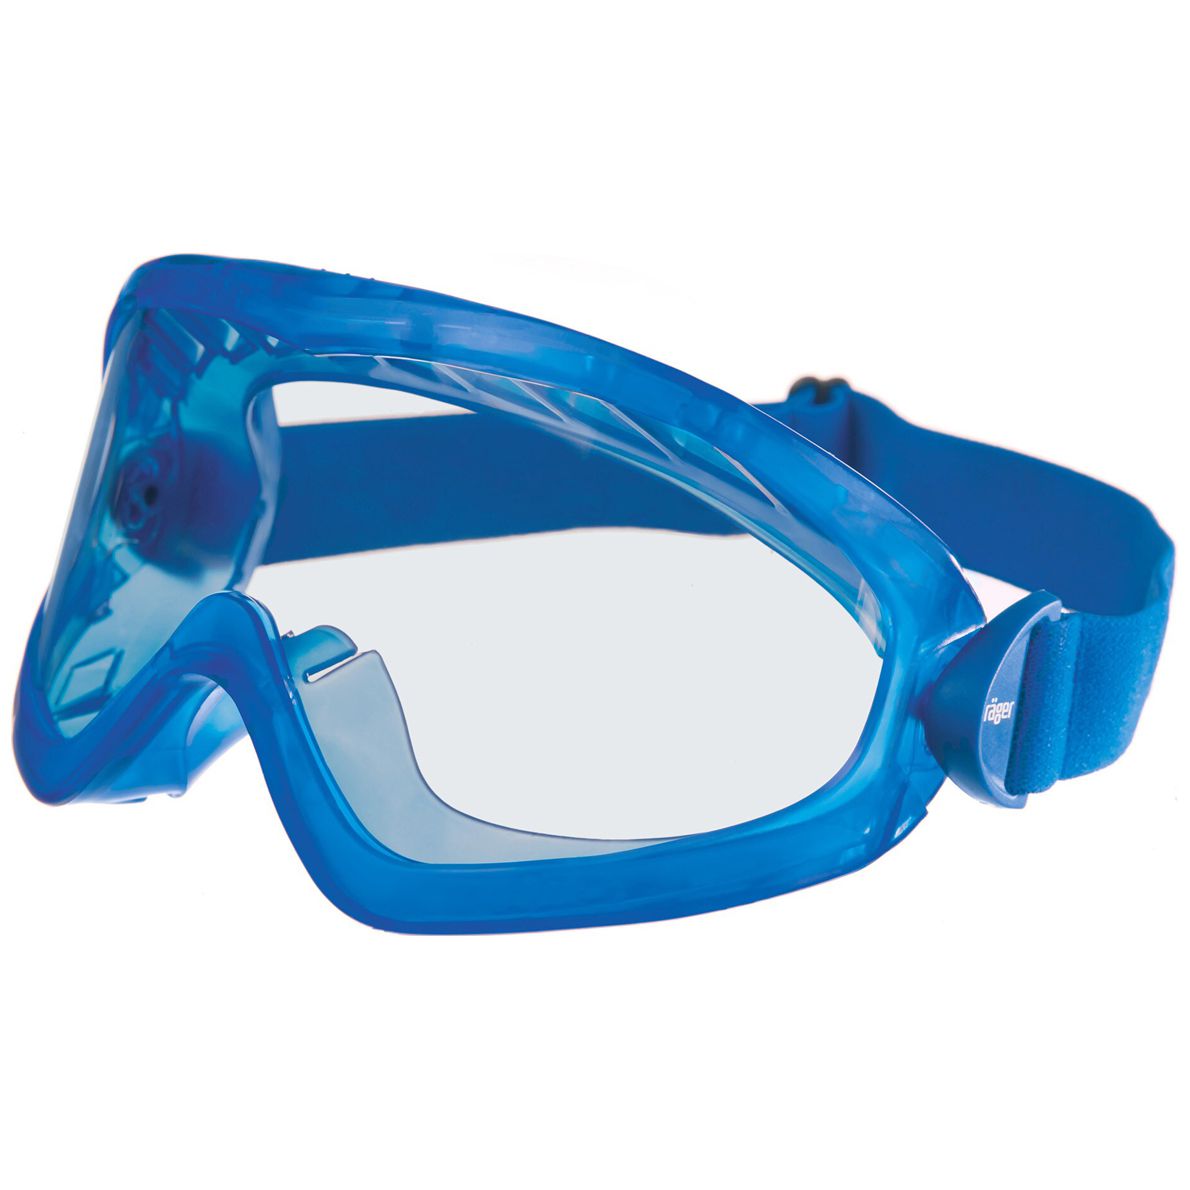 Dräger X-pect 8515 Vollsicht-Schutzbrille - für Brillenträger - kratz- & beschlagfest - EN 166 - Blau/Klar